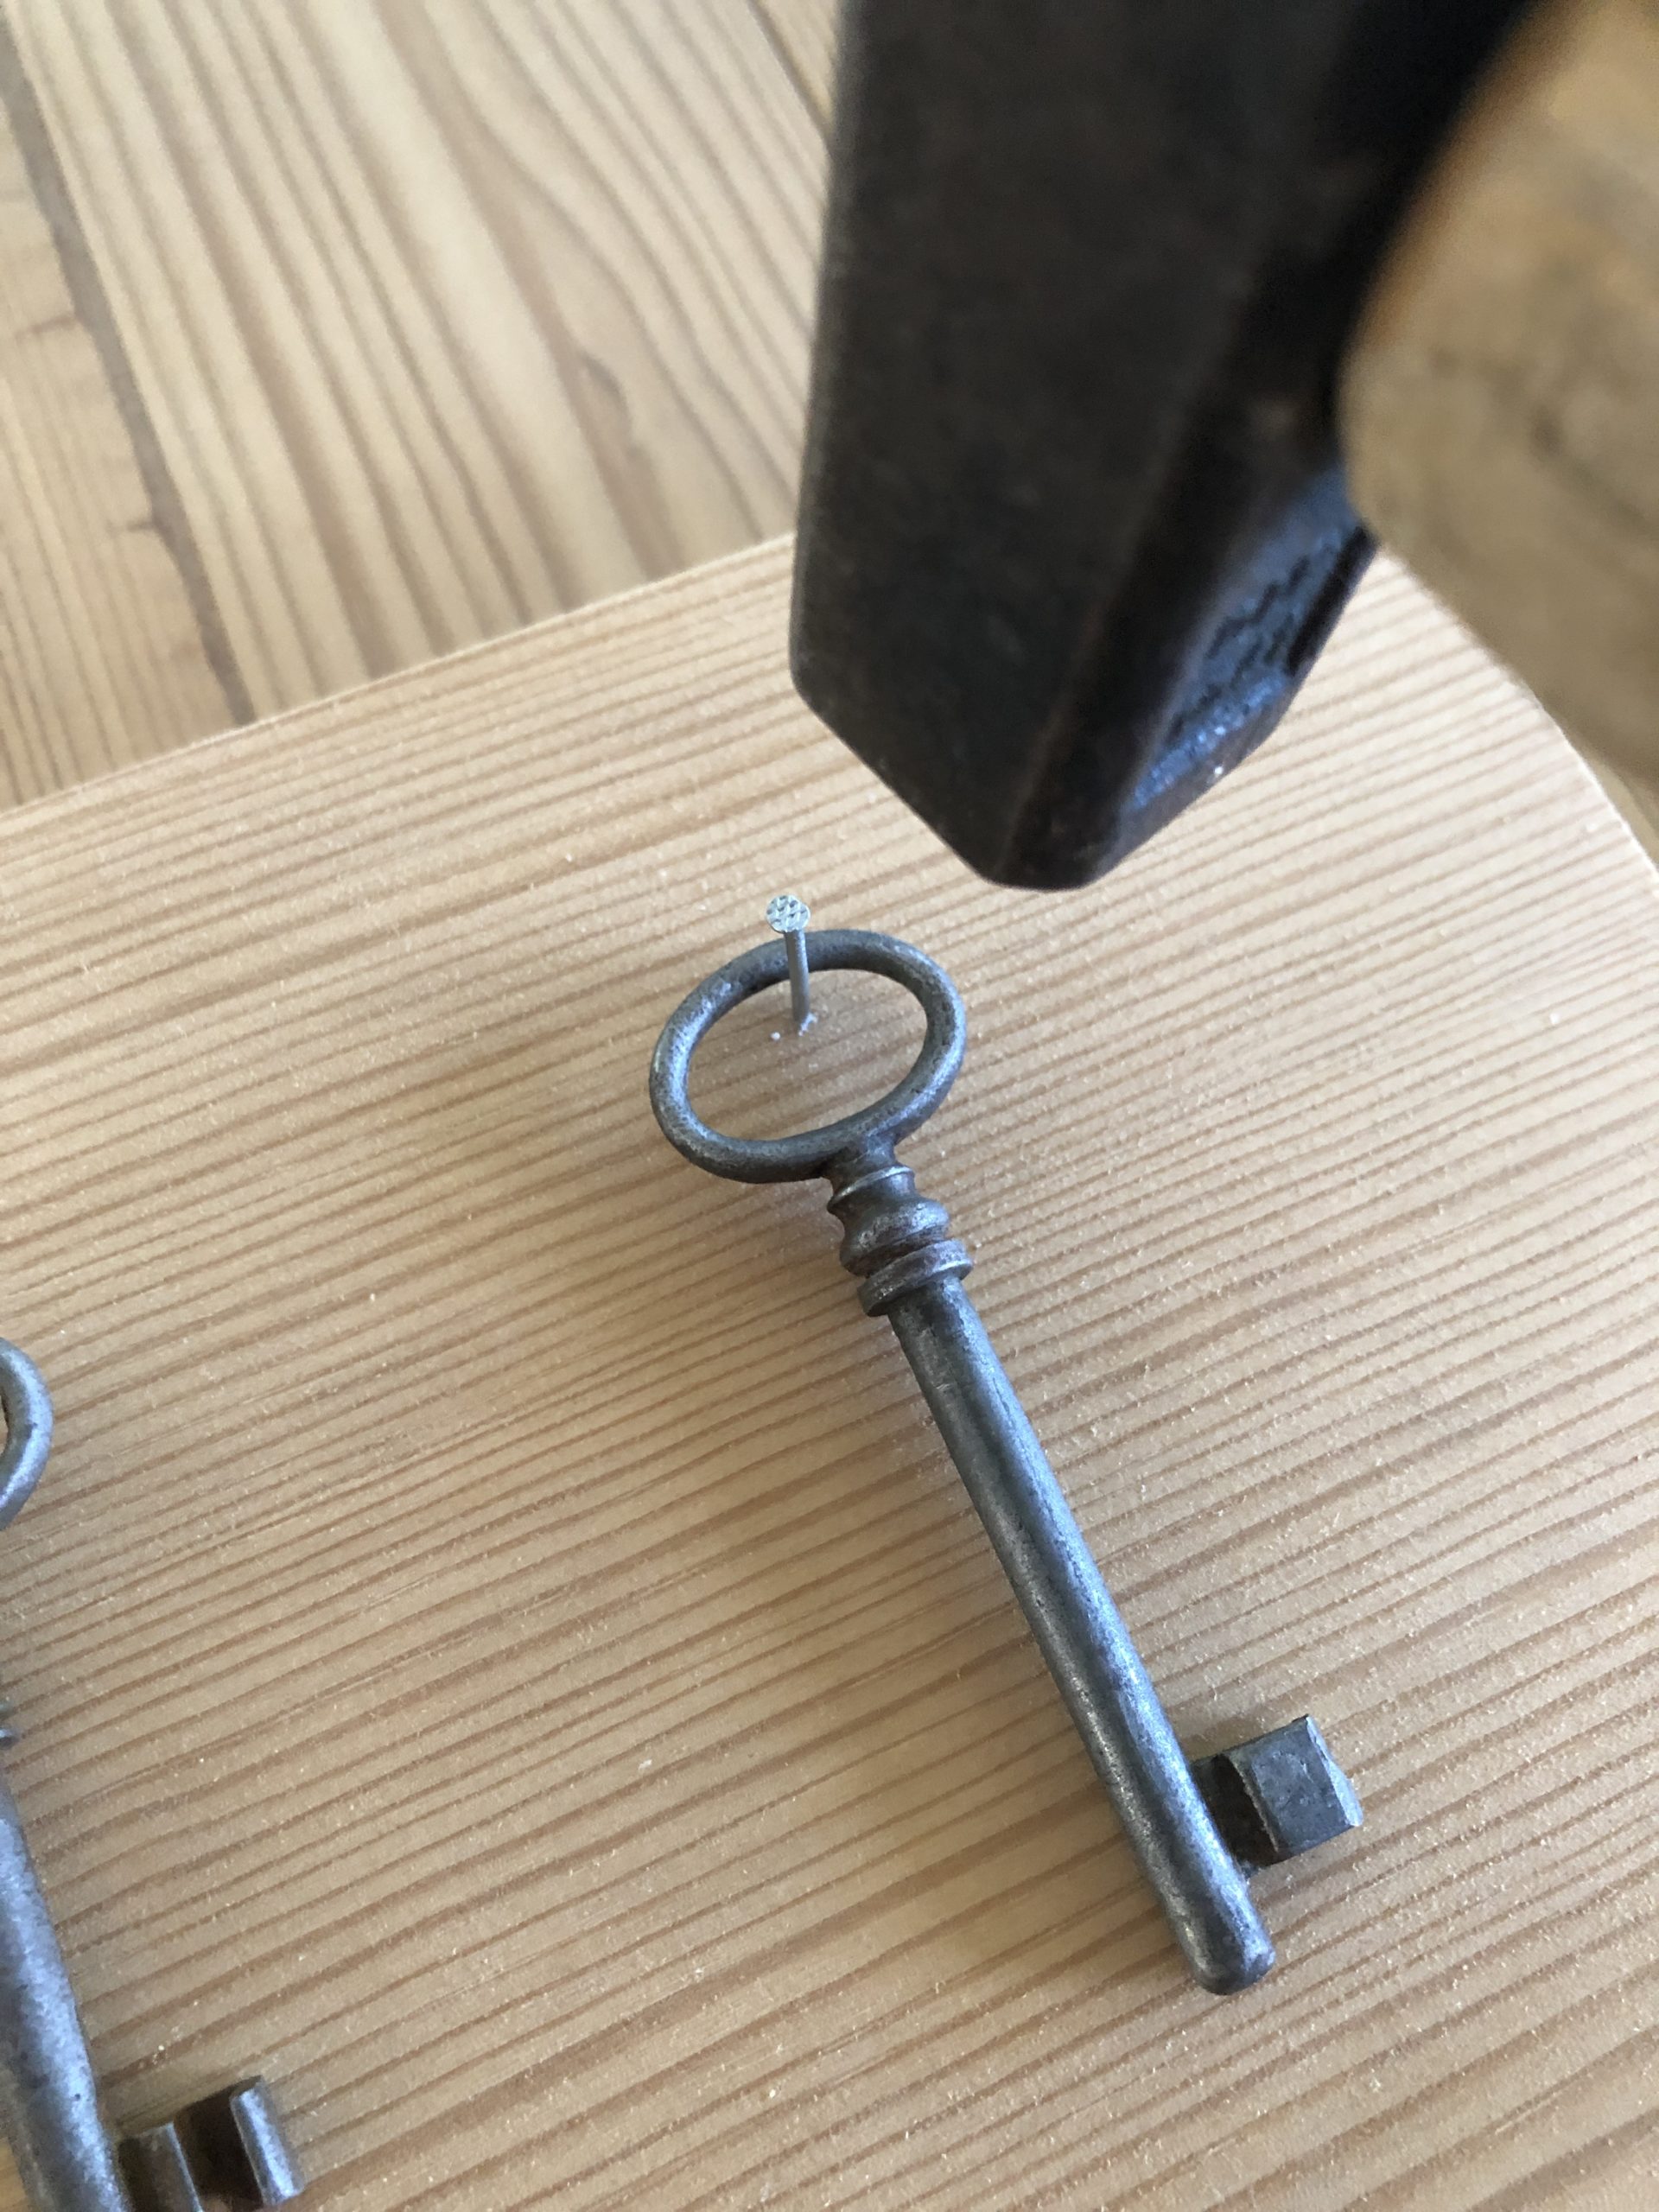 Bild zum Schritt 5 für das Bastel- und DIY-Abenteuer für Kinder: 'Nun werden die Schlüsselhacken befestigt. Dazu einen  Nagel mittig...'